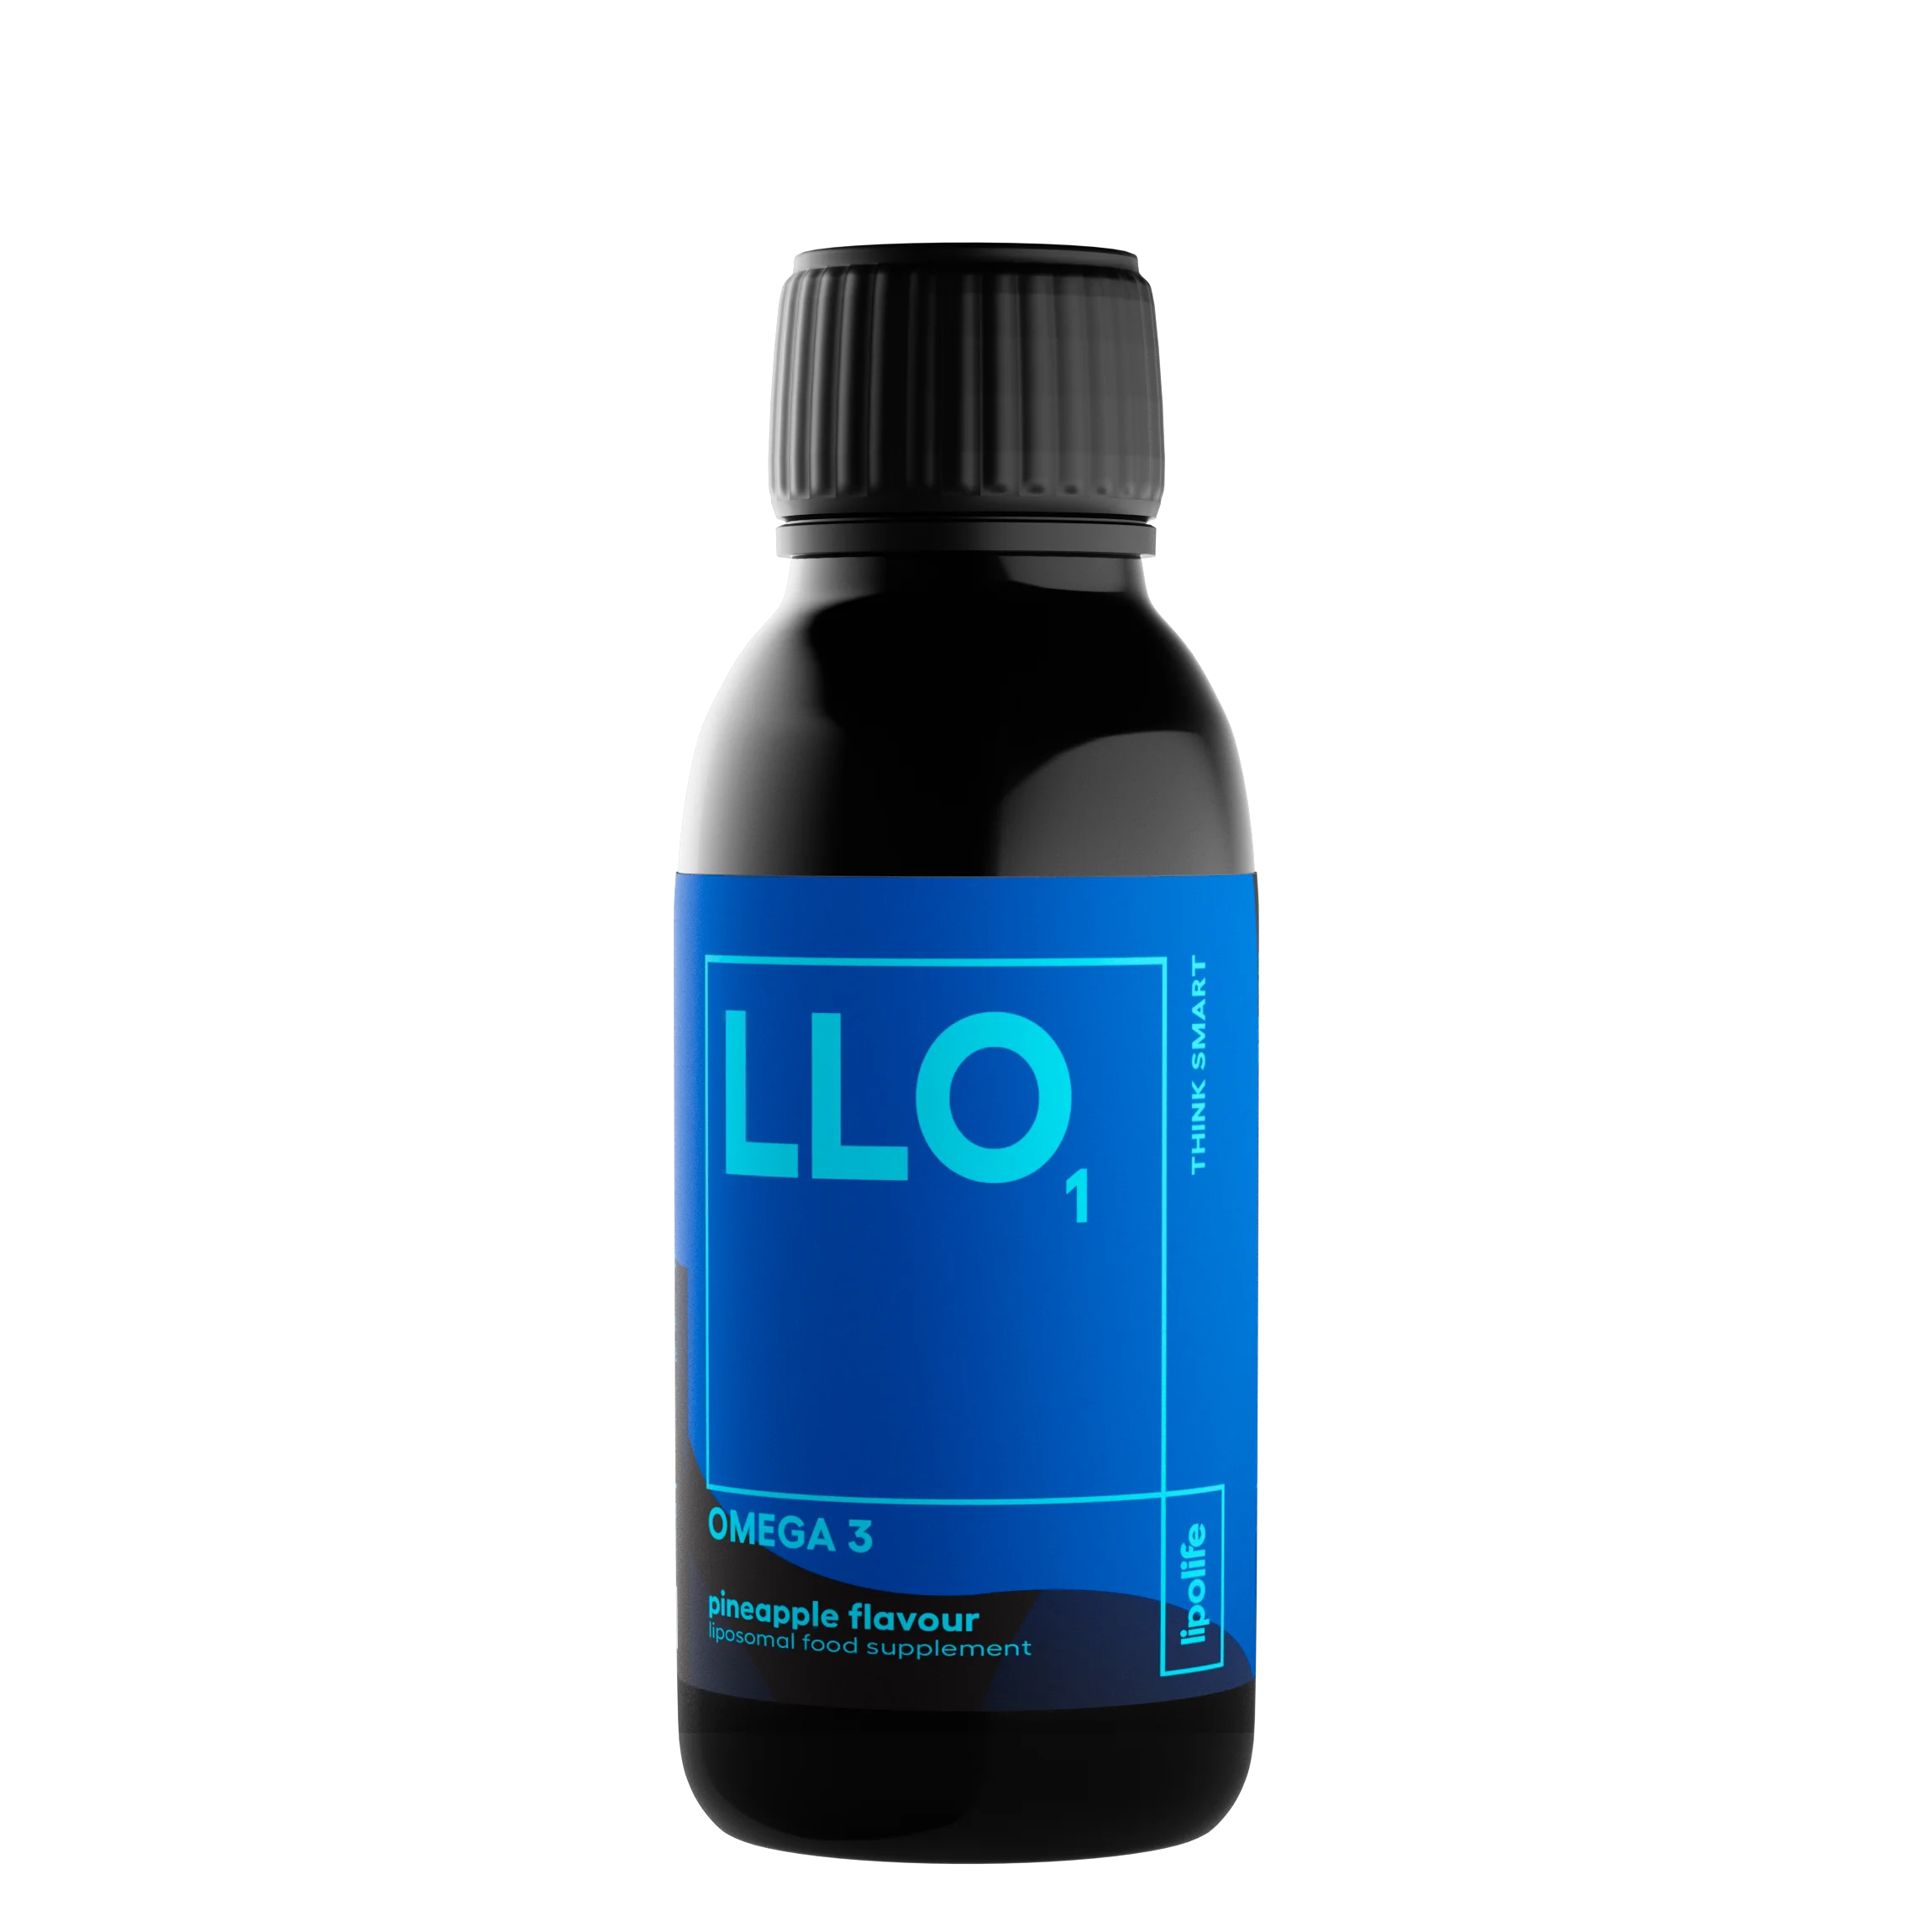 LLO1 - течен и липозомен омега 3 (EPA & DHA) - ананас, 150 мл.